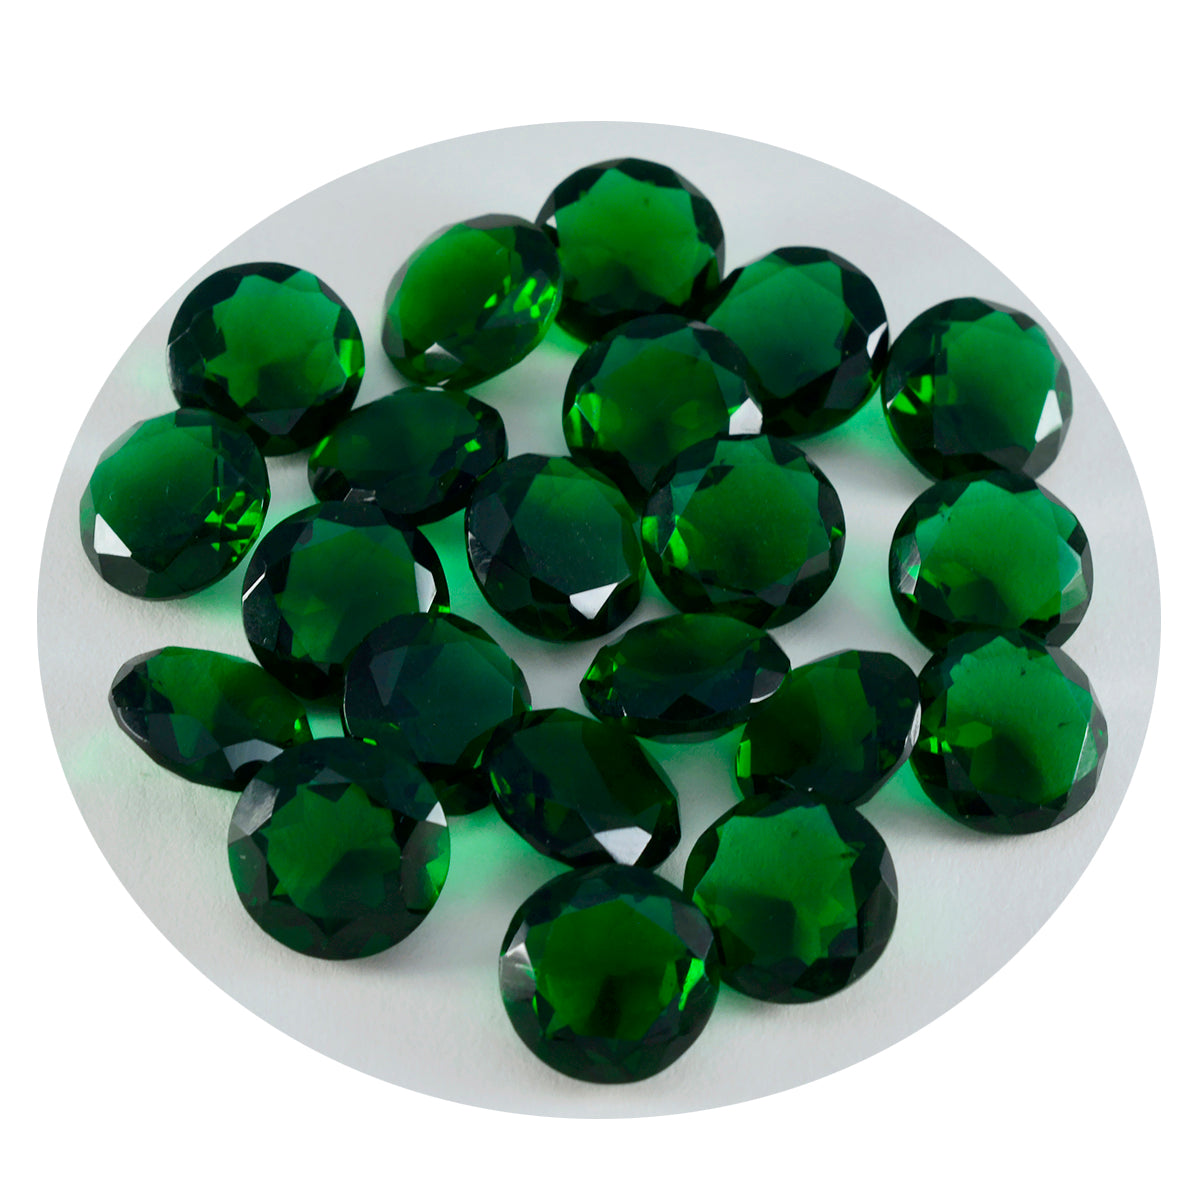 riyogems 1шт зеленый изумруд cz ограненный 8x8 мм круглая форма качество ААА свободный драгоценный камень